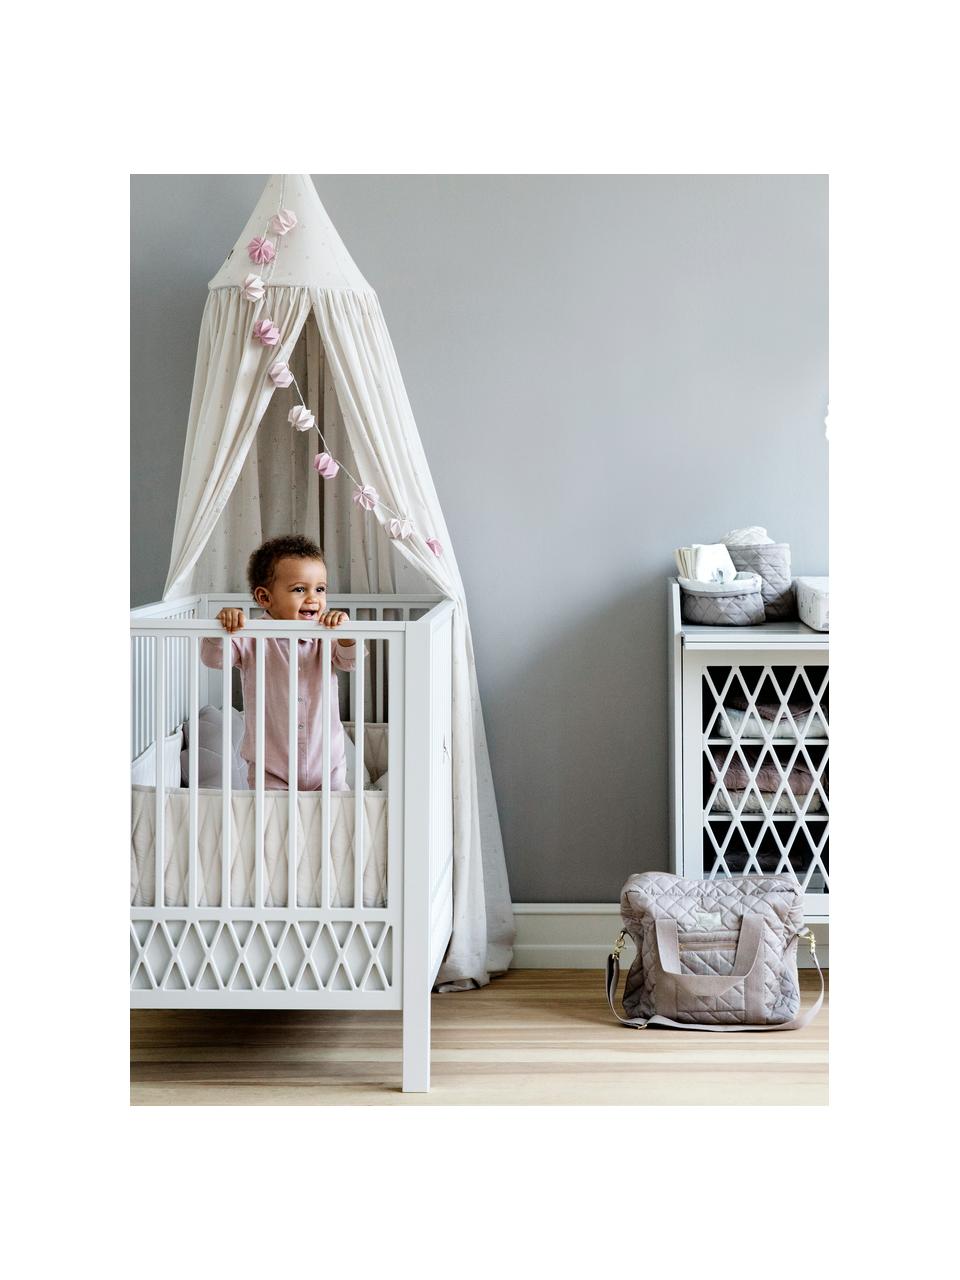 Baby-Bett Harlequin in Weiß, Kiefernholz, Mitteldichte Holzfaserplatte (MDF), lackiert mit VOC-freier Farbe, Weiß, B 72 x L 132 cm